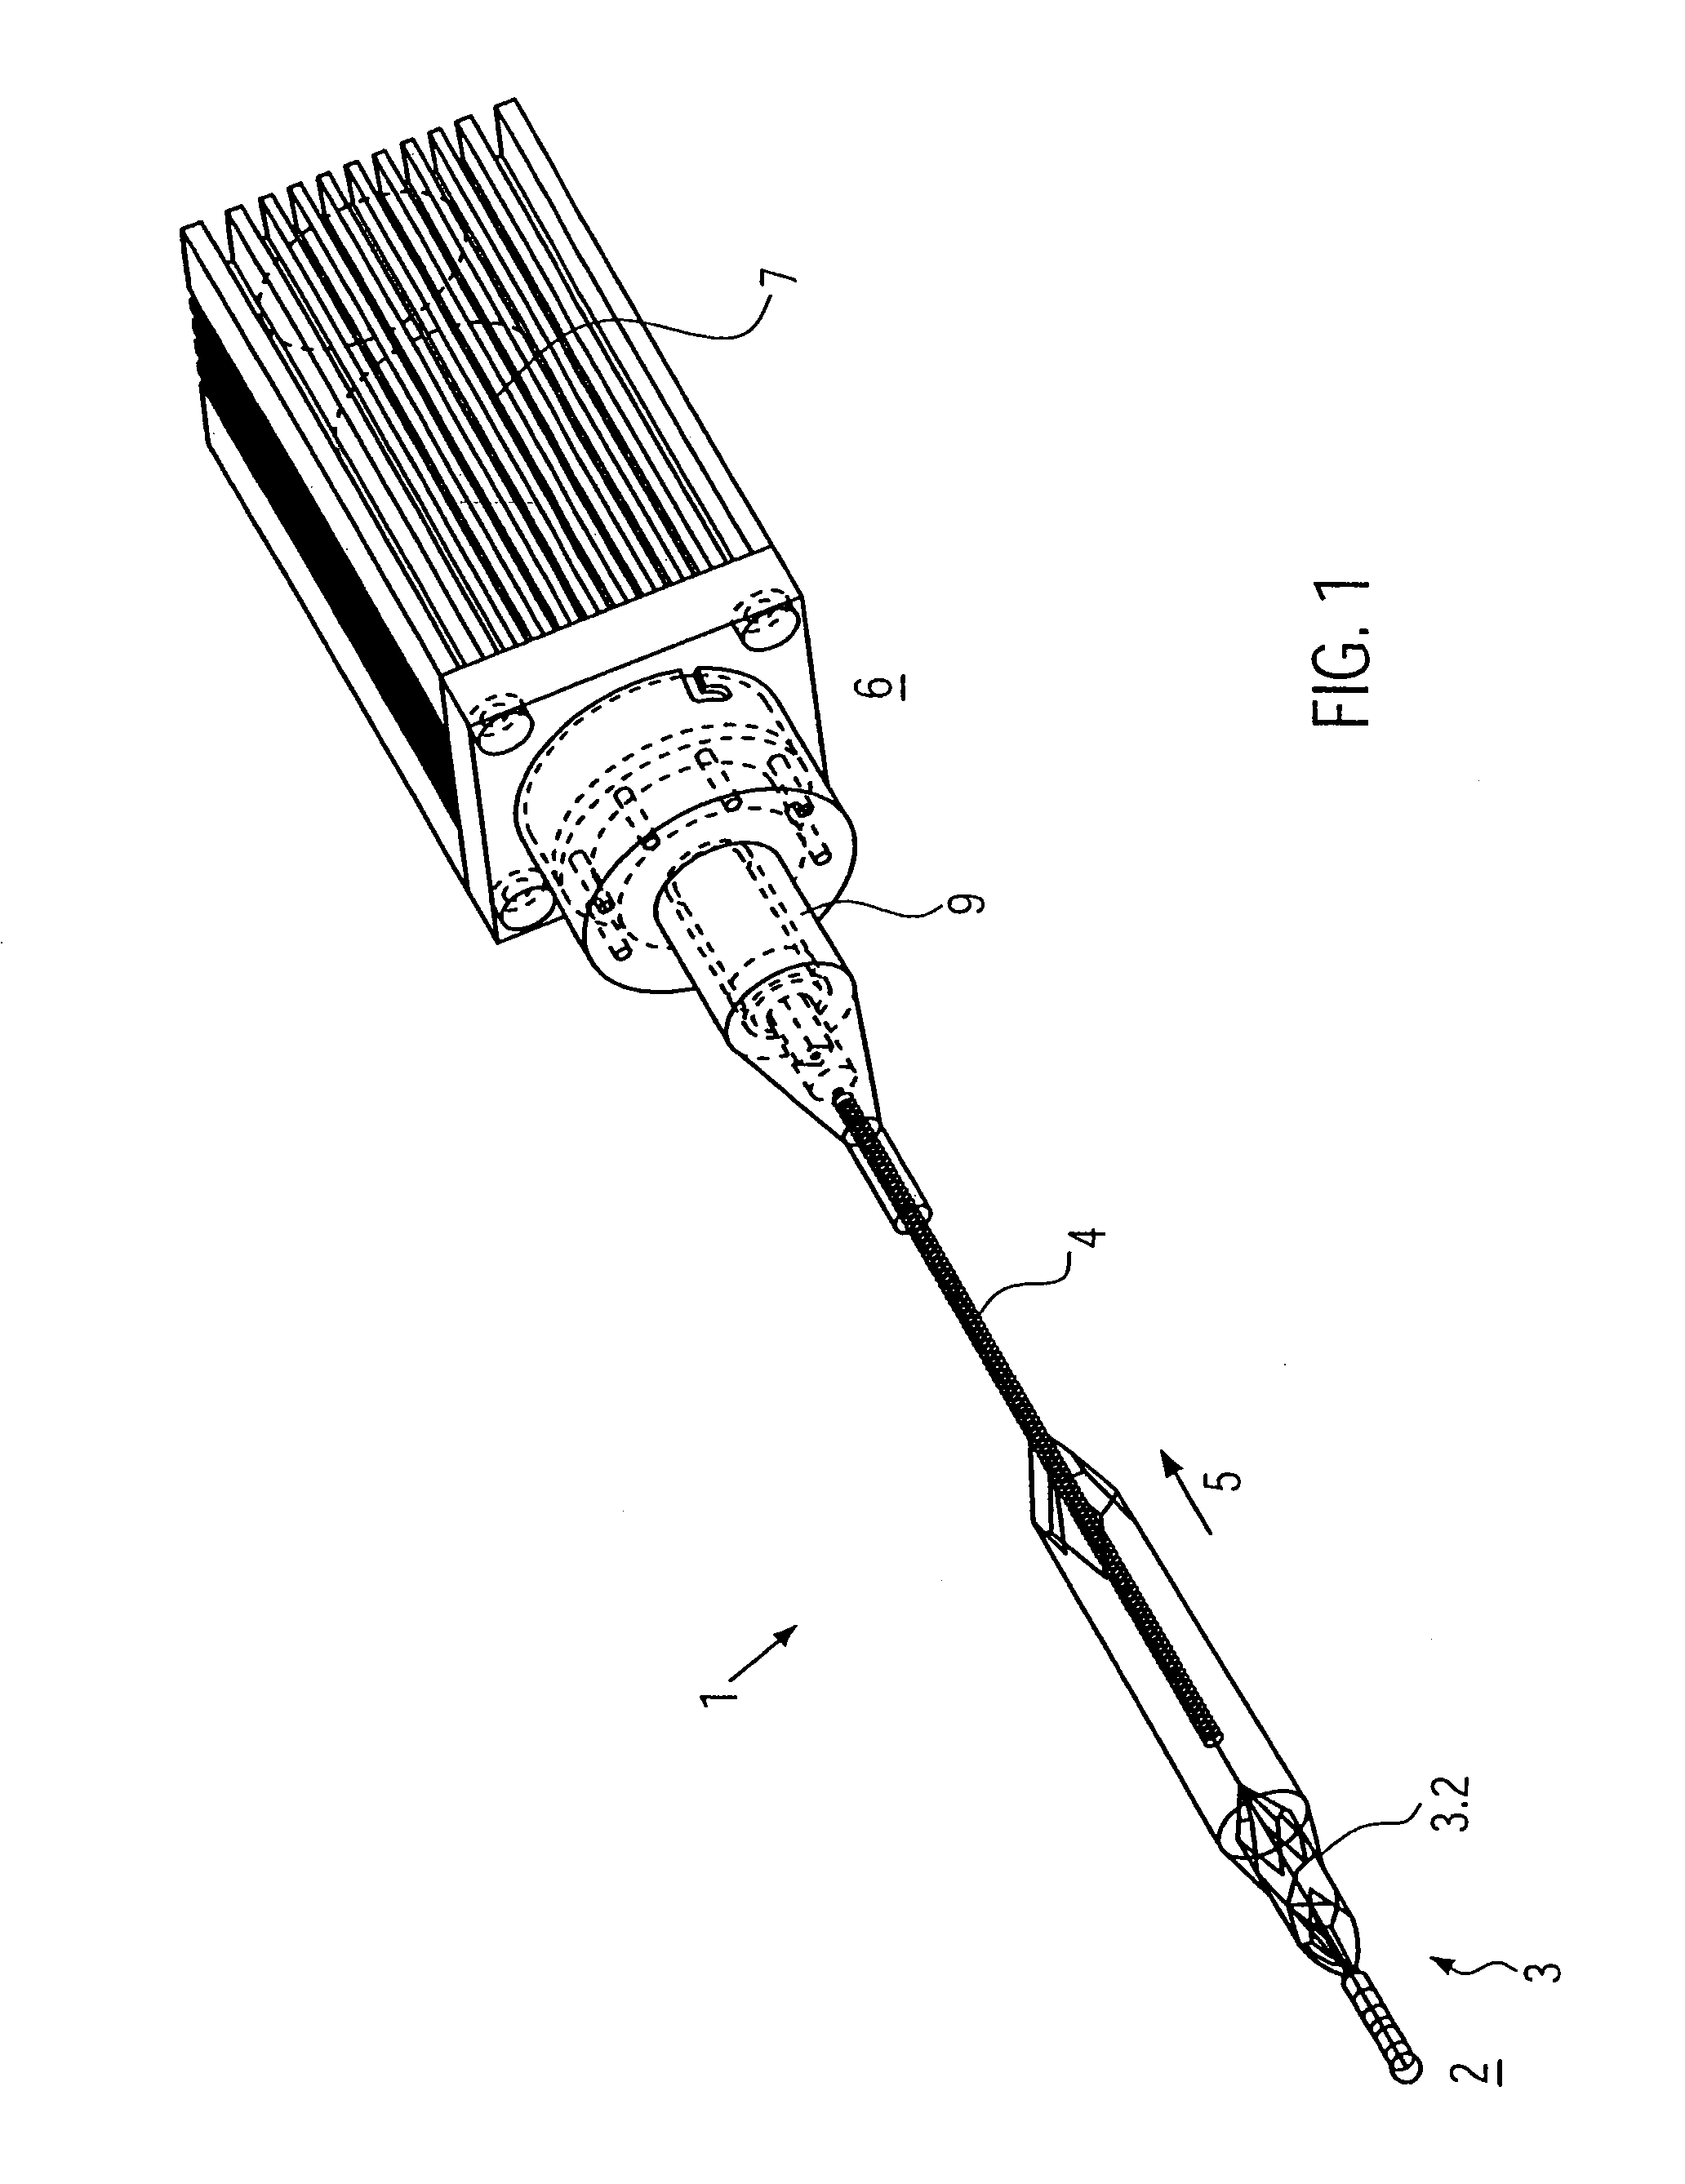 Catheter device